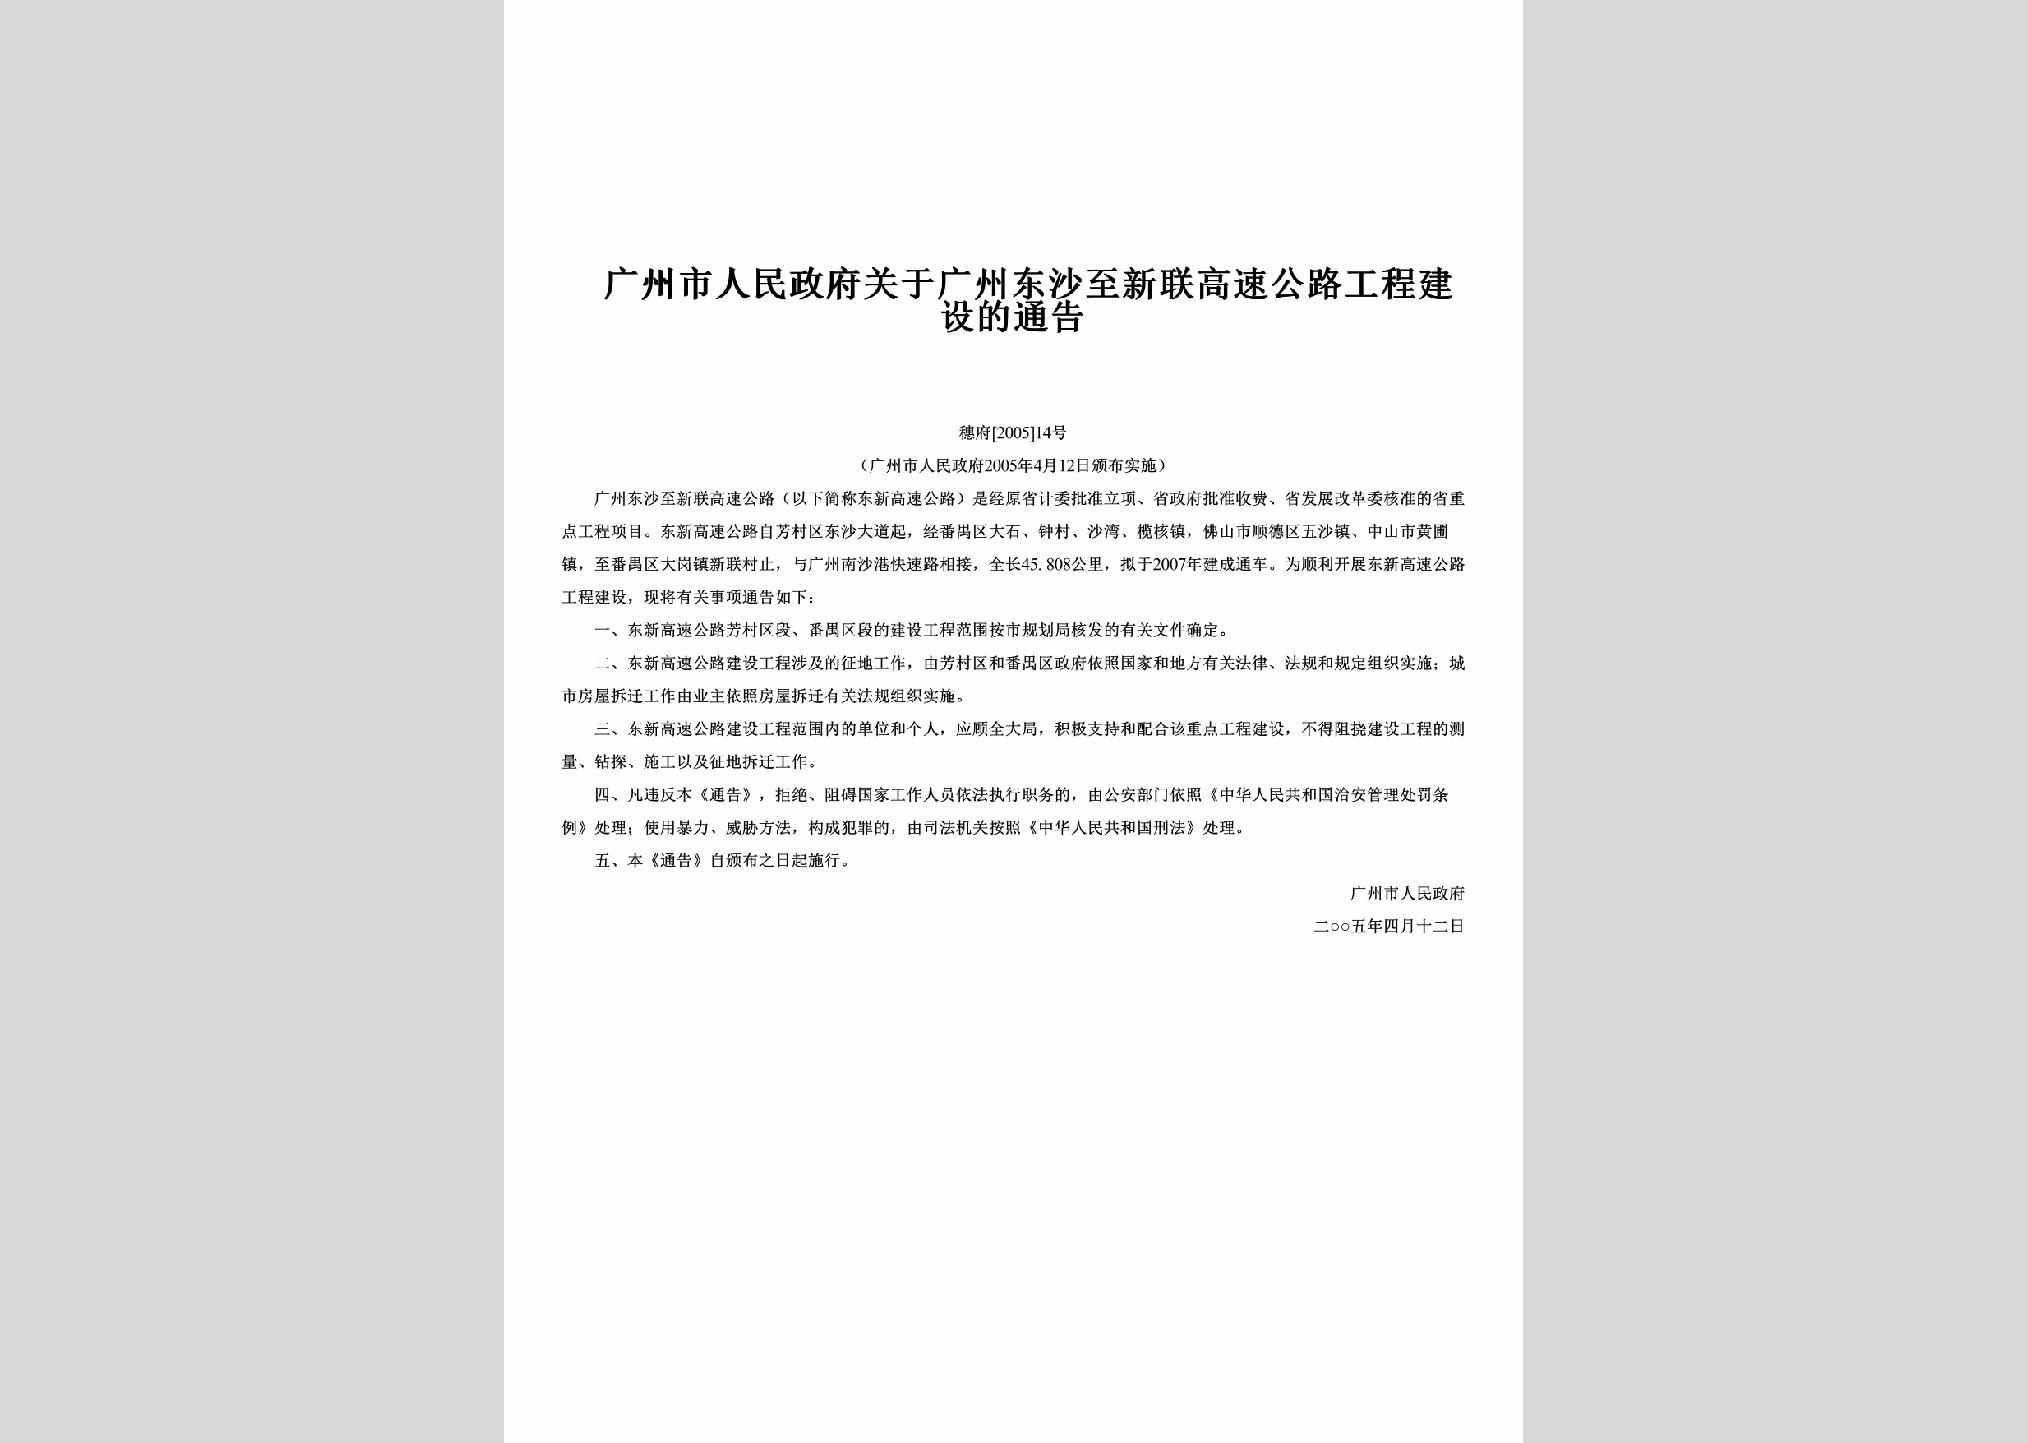 穗府[2005]14号：关于广州东沙至新联高速公路工程建设的通告